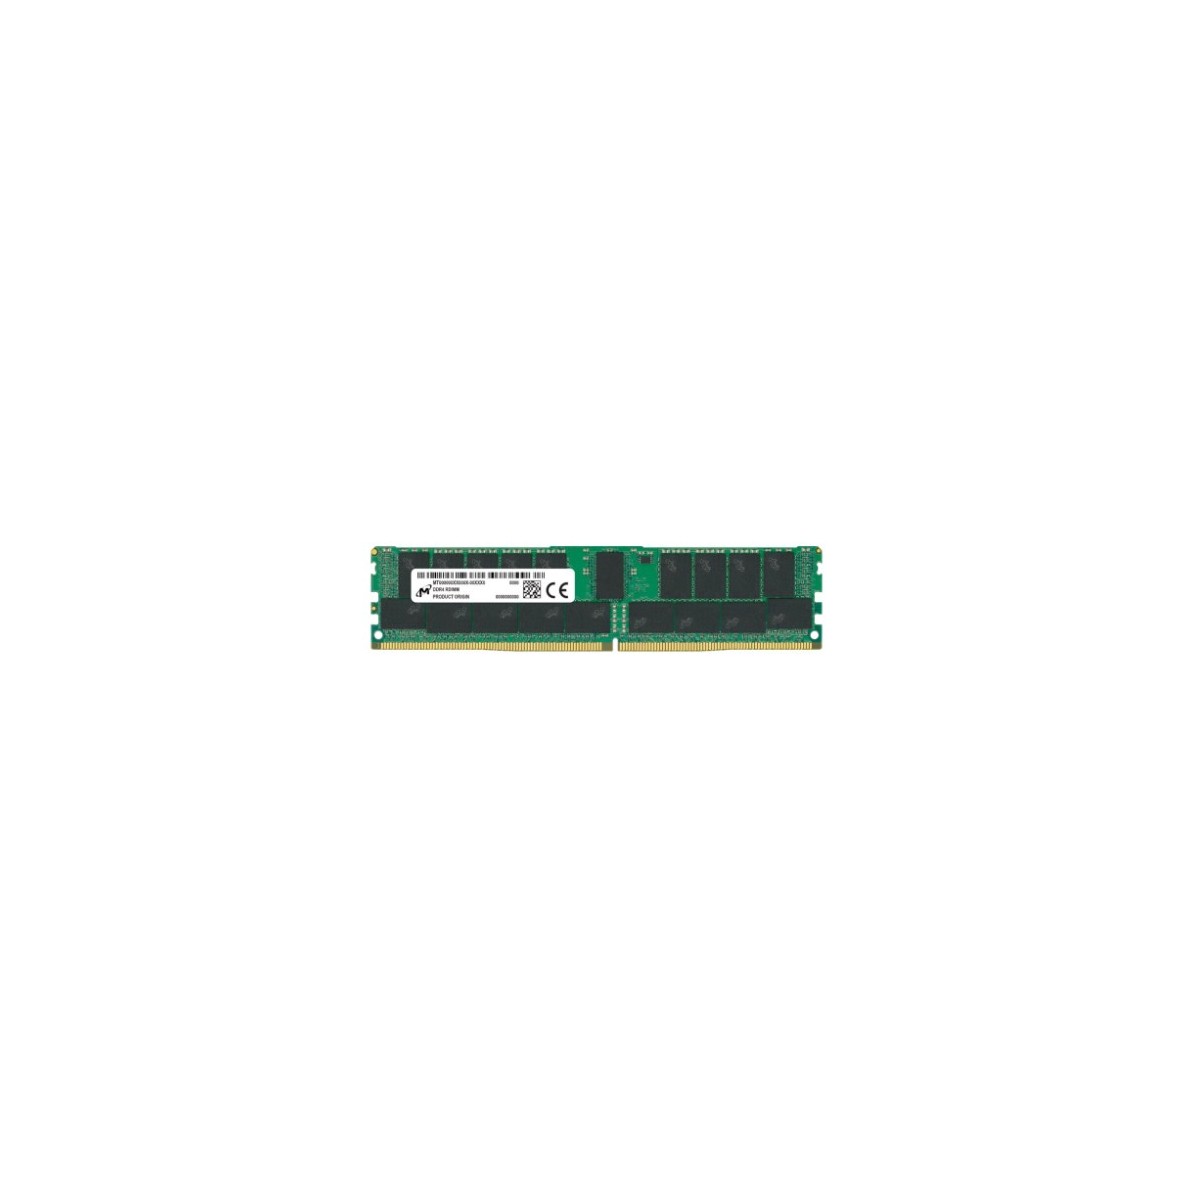 Micron MTA18ASF4G72PZ-3G2E1 - 32 GB - 4 x 4 GB - DDR4 - 288-pin DIMM